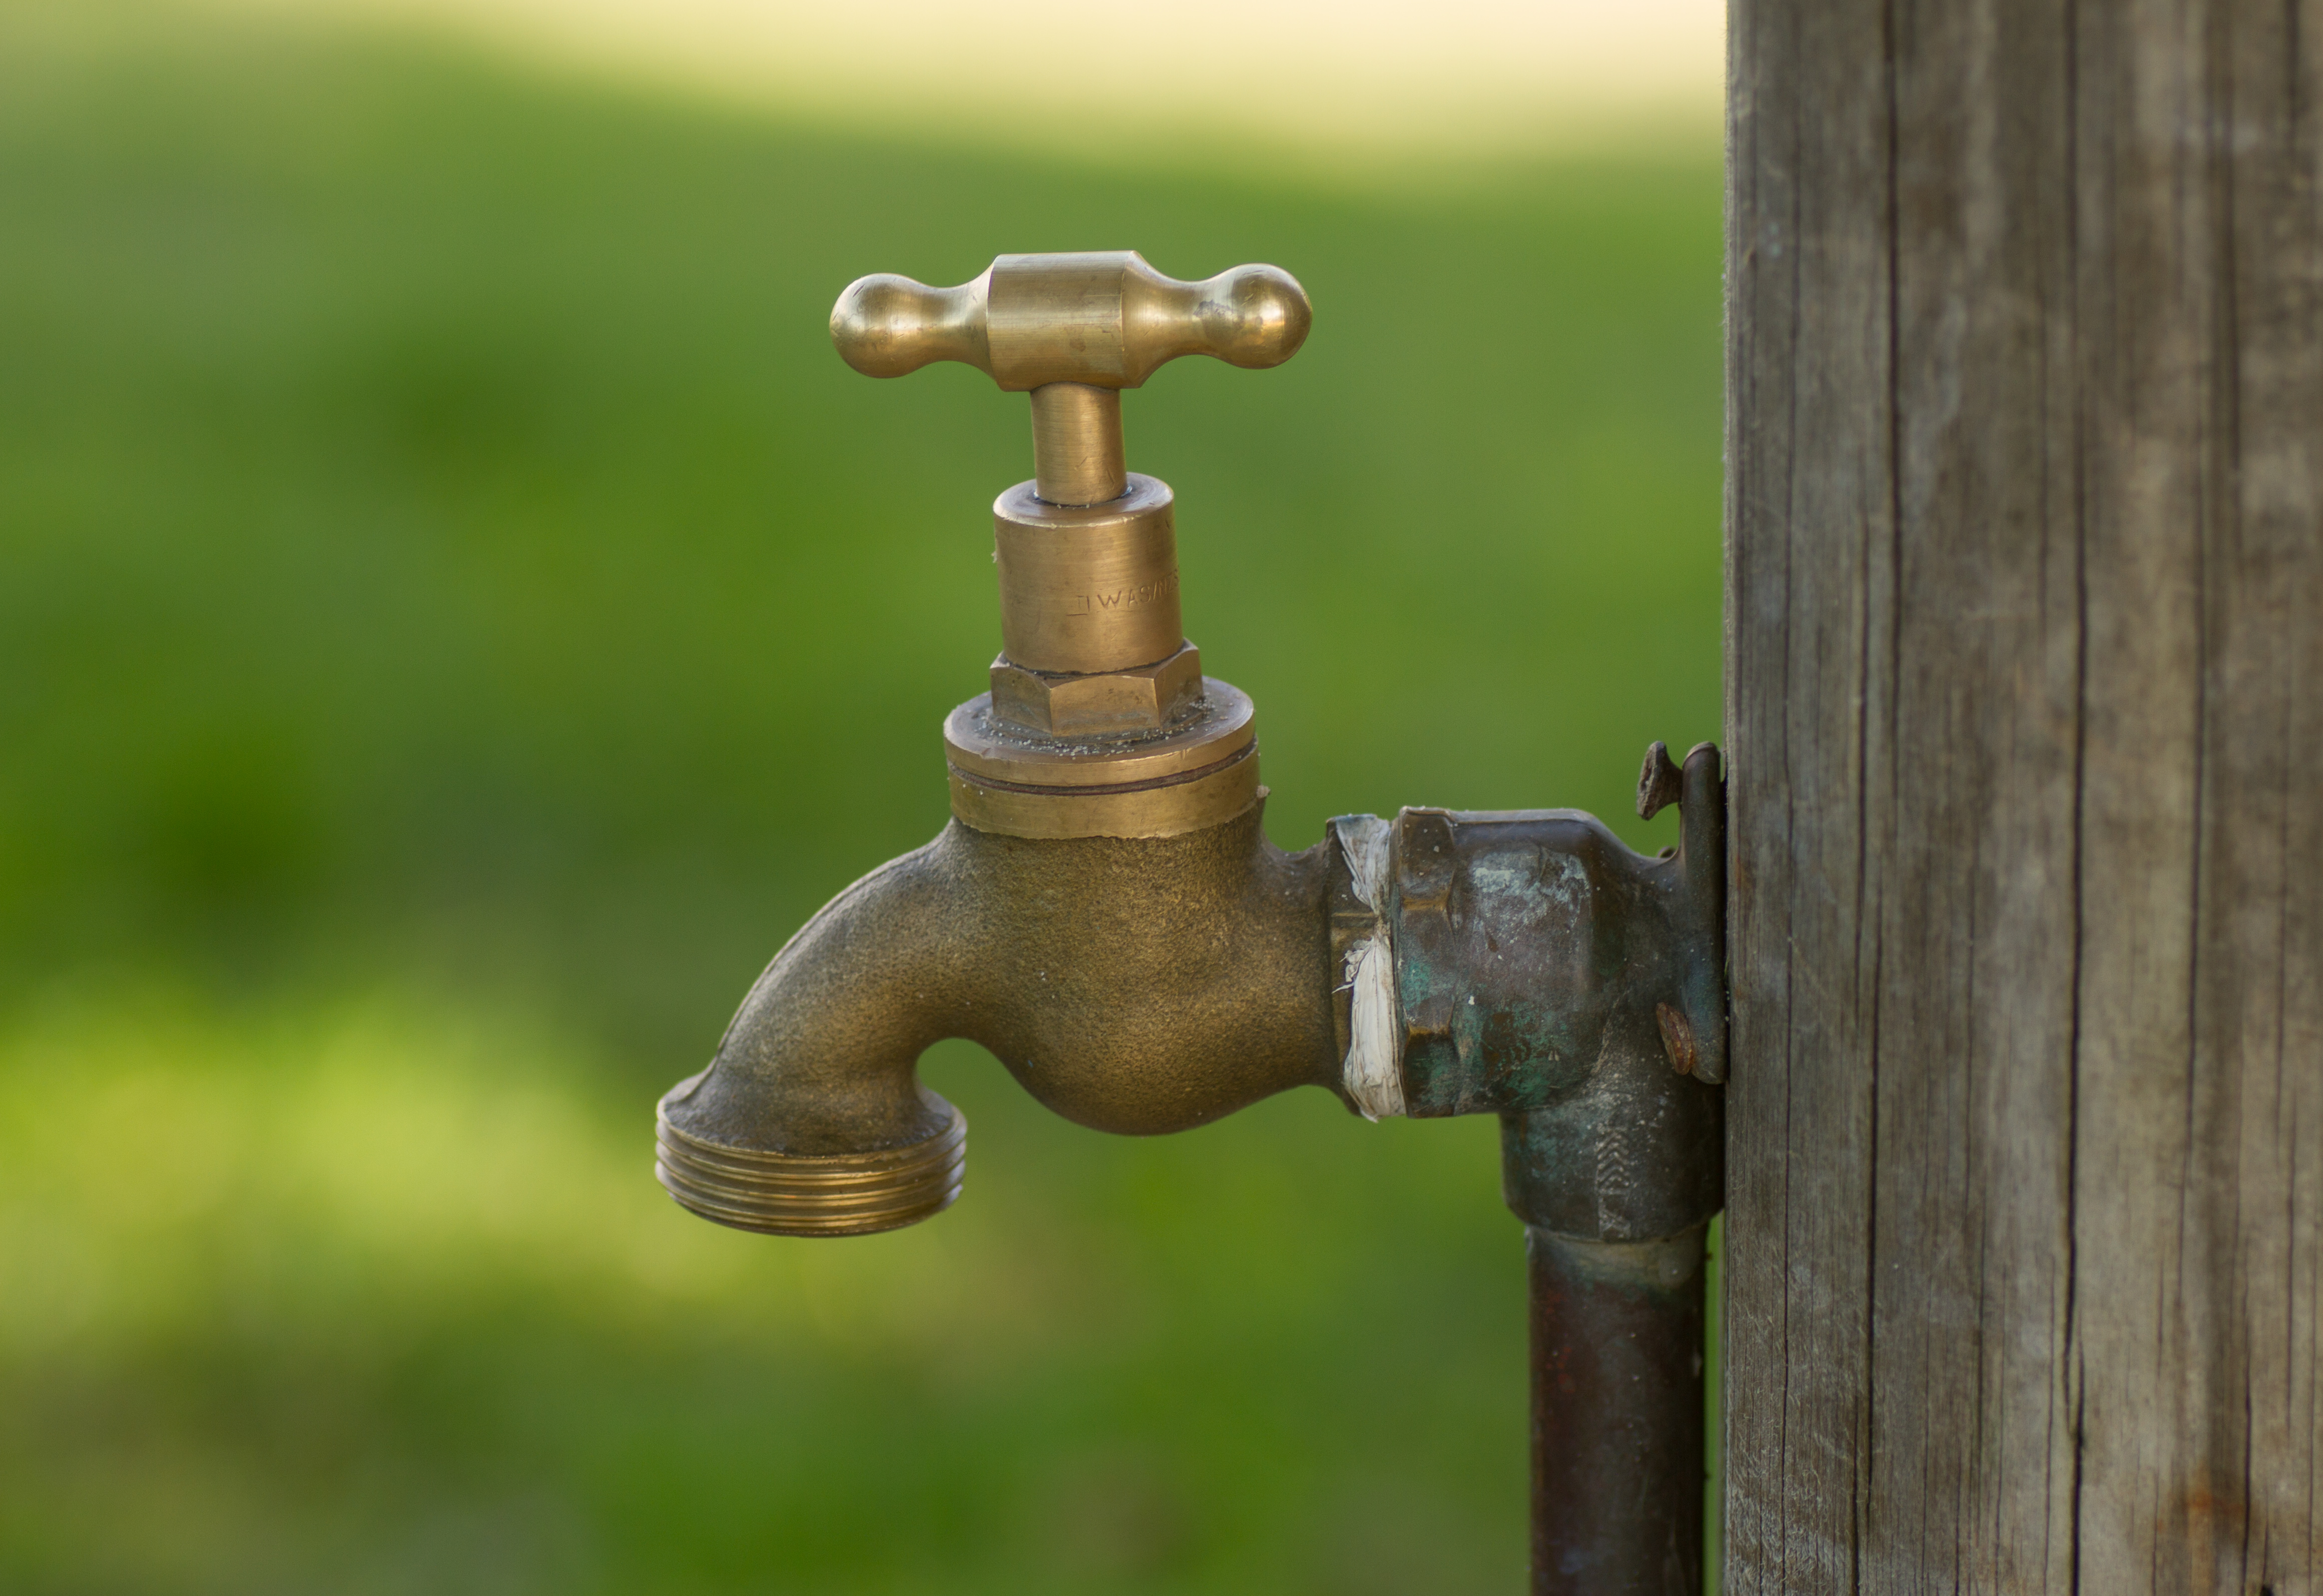 File:Brass water tap in park.jpg - Wikimedia Commons